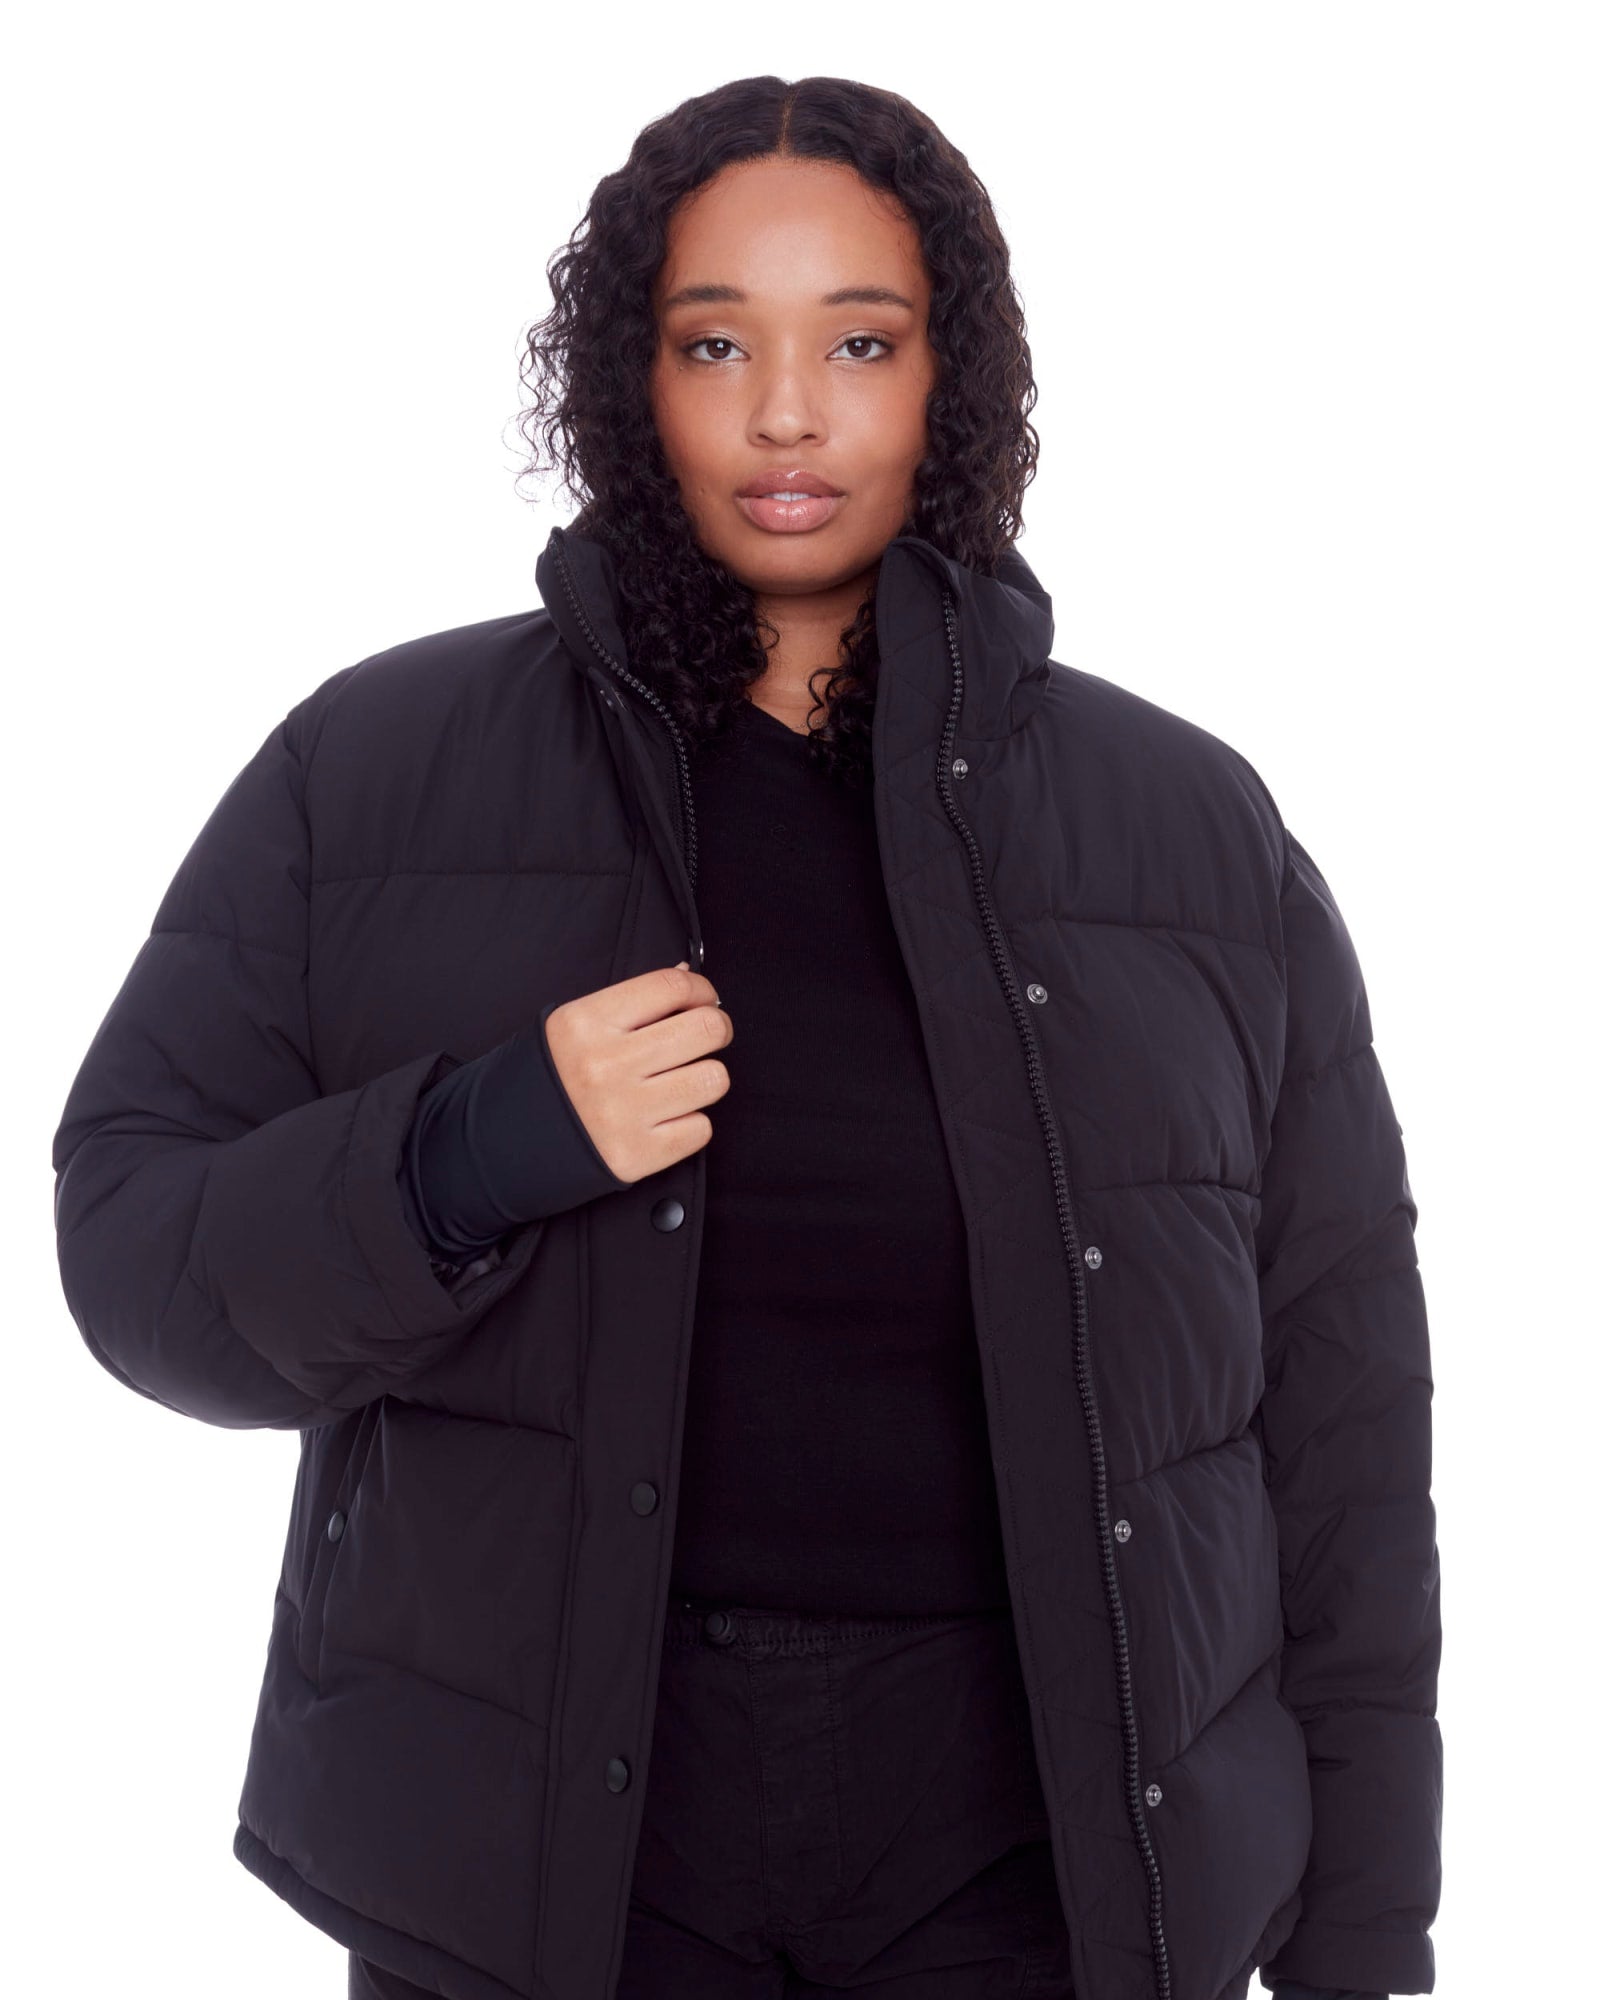 Plus Size Jacket Women Winter, Plus Size Winter Coat Jacket